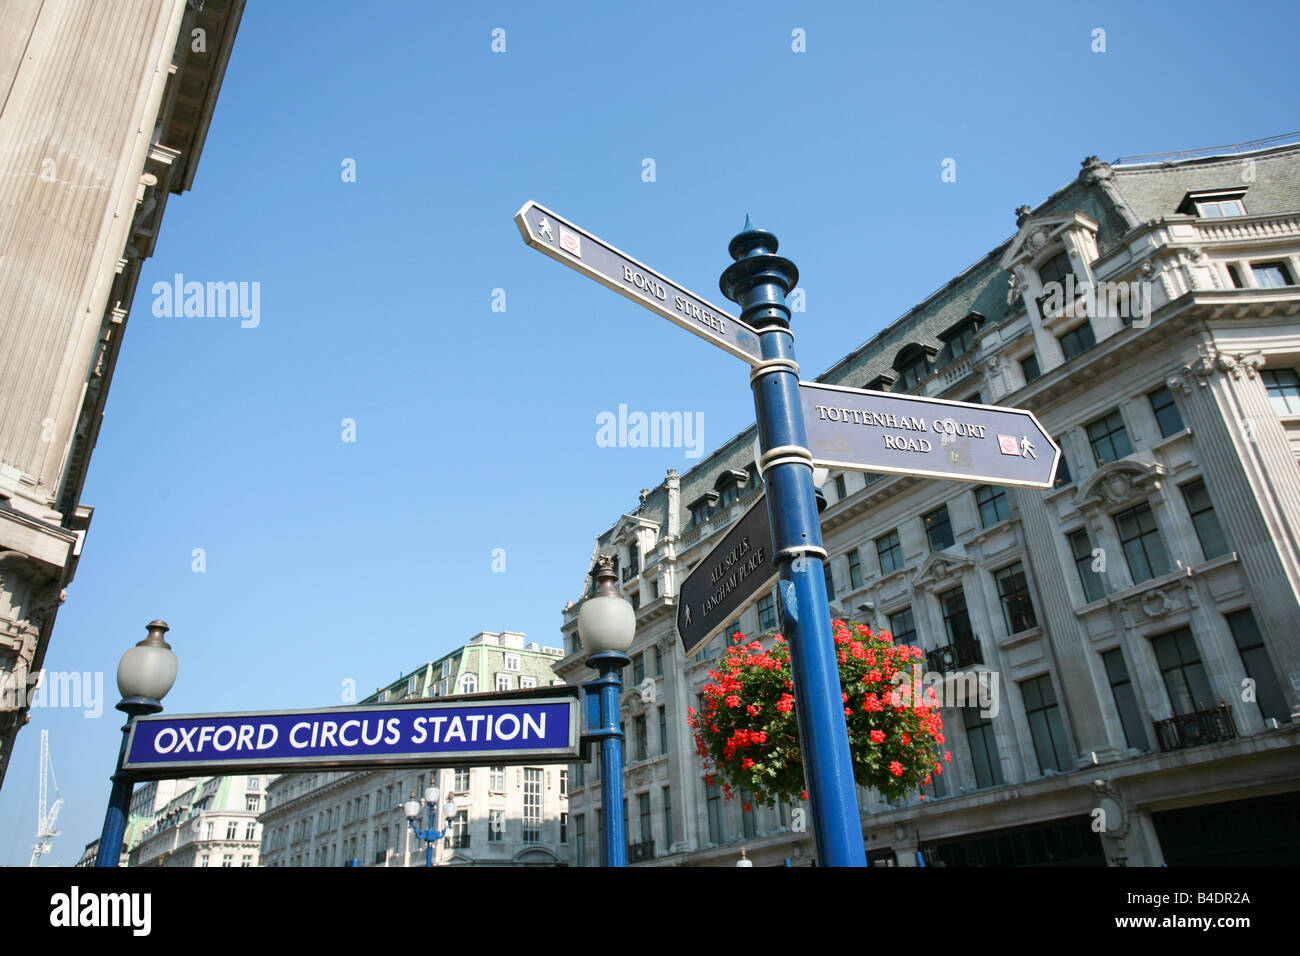 Touristischen Straßenschilder in Oxford Circus Gegend von London zeigen Hauptgrenzsteine Tottenham Court Road und Bond Street UK Stockfoto